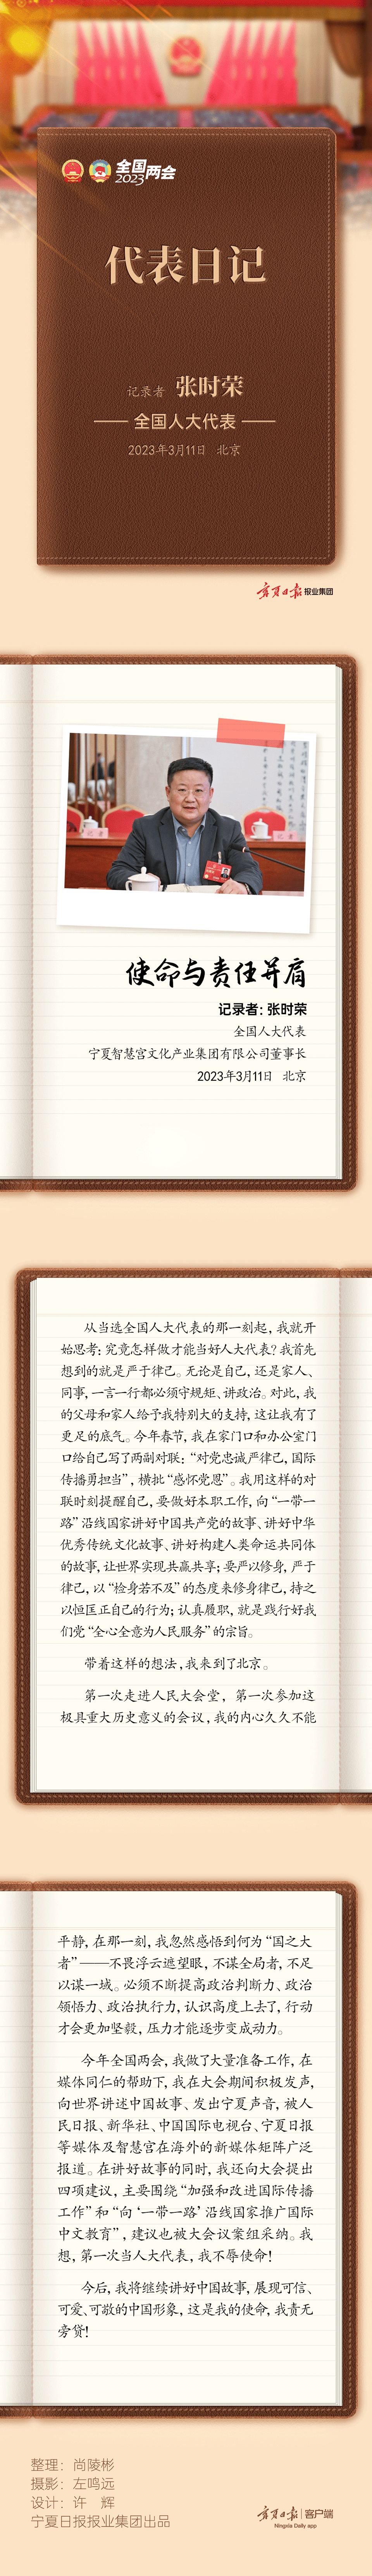 日记内容-张时荣-静态.png